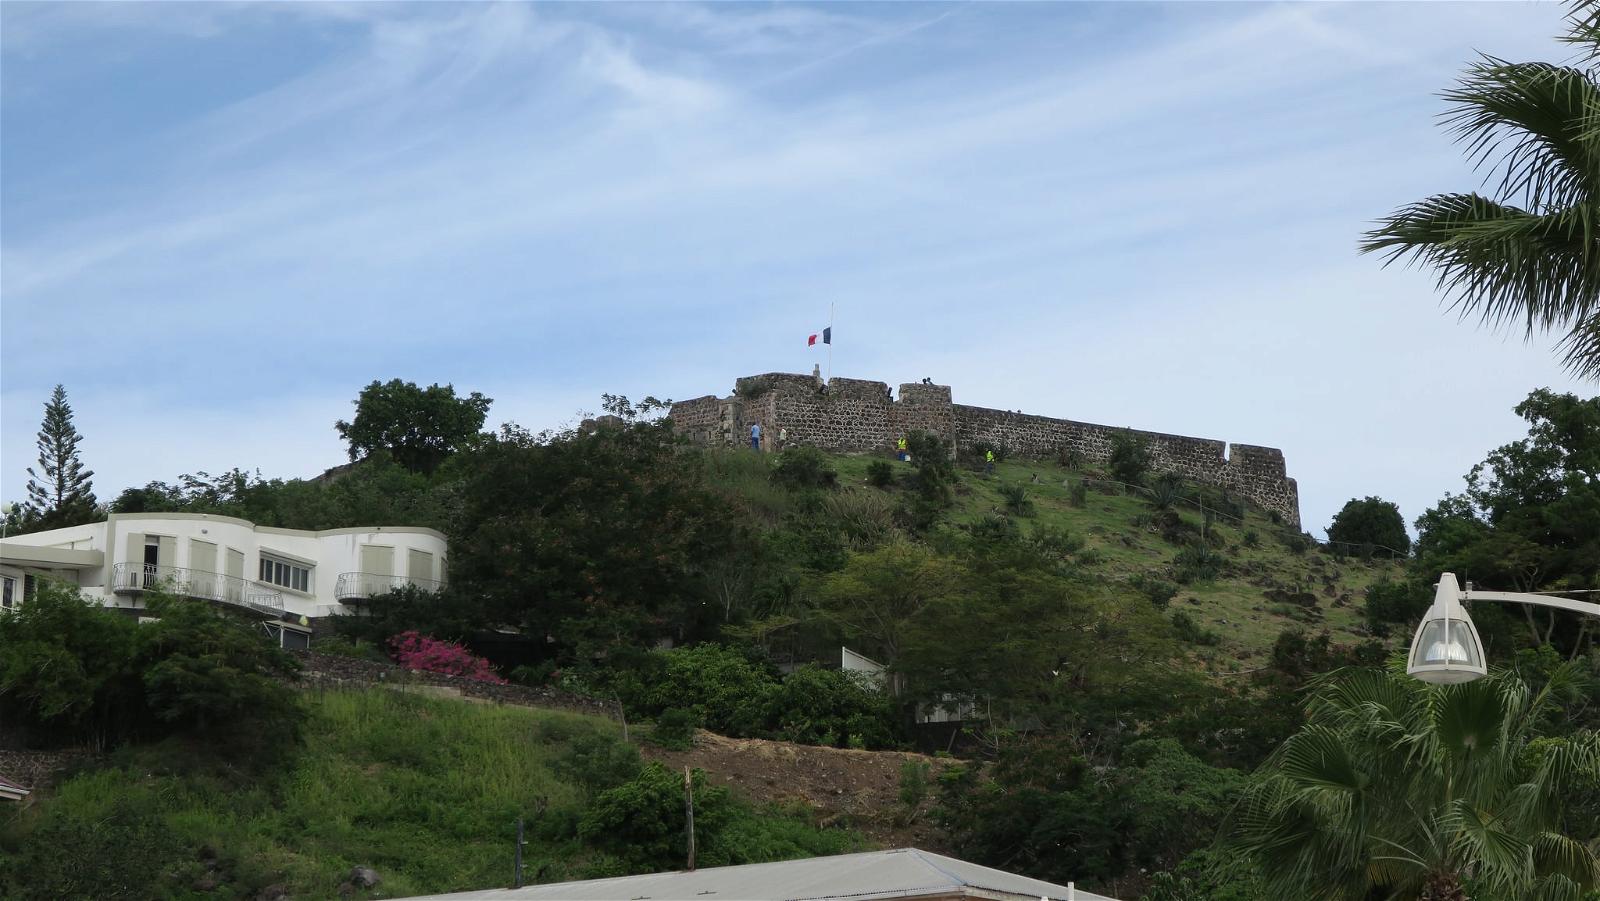 ภาพของ Fort Louis. saintmartin fortlouis